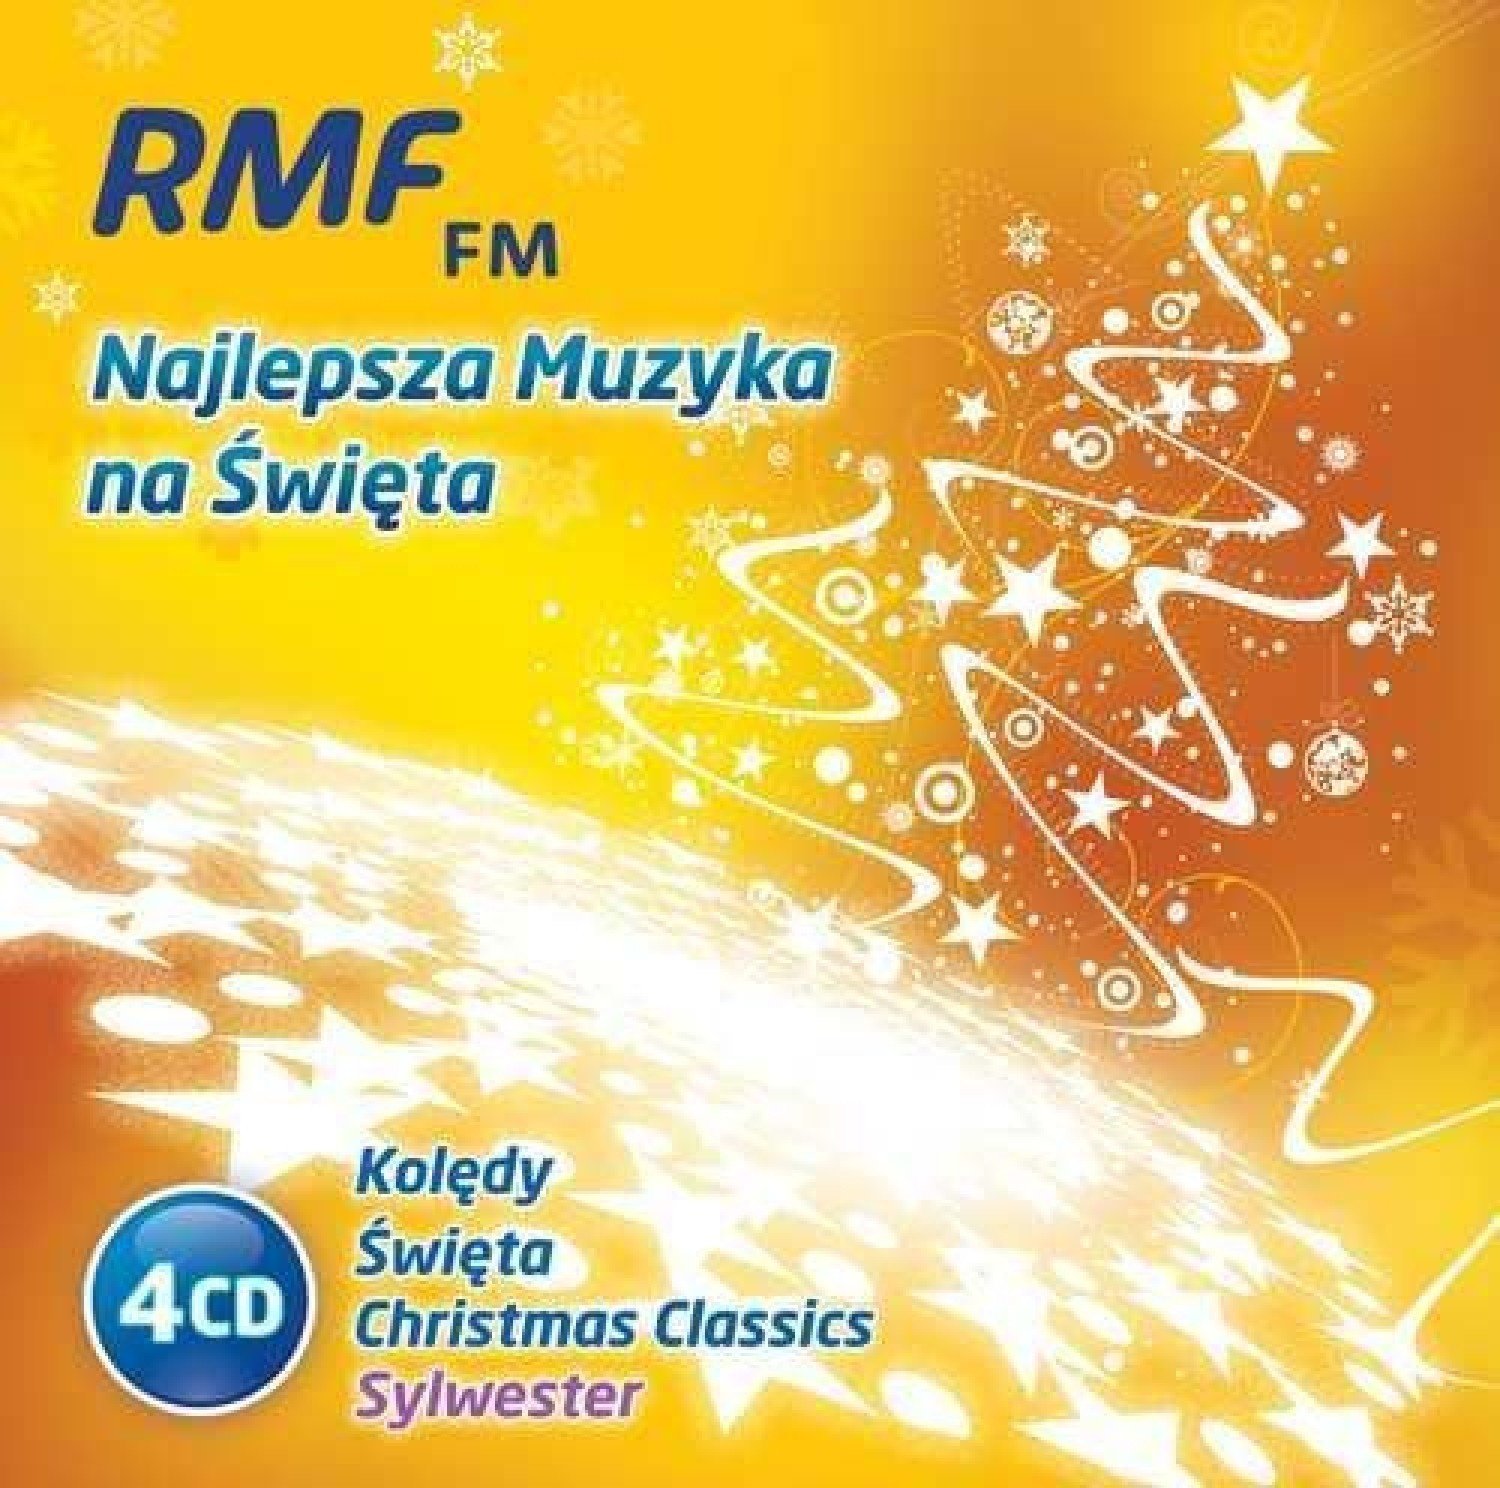 RMF FM najlepsza muzyka na święta: nowa płyta pod choinkę | Nasze Miasto